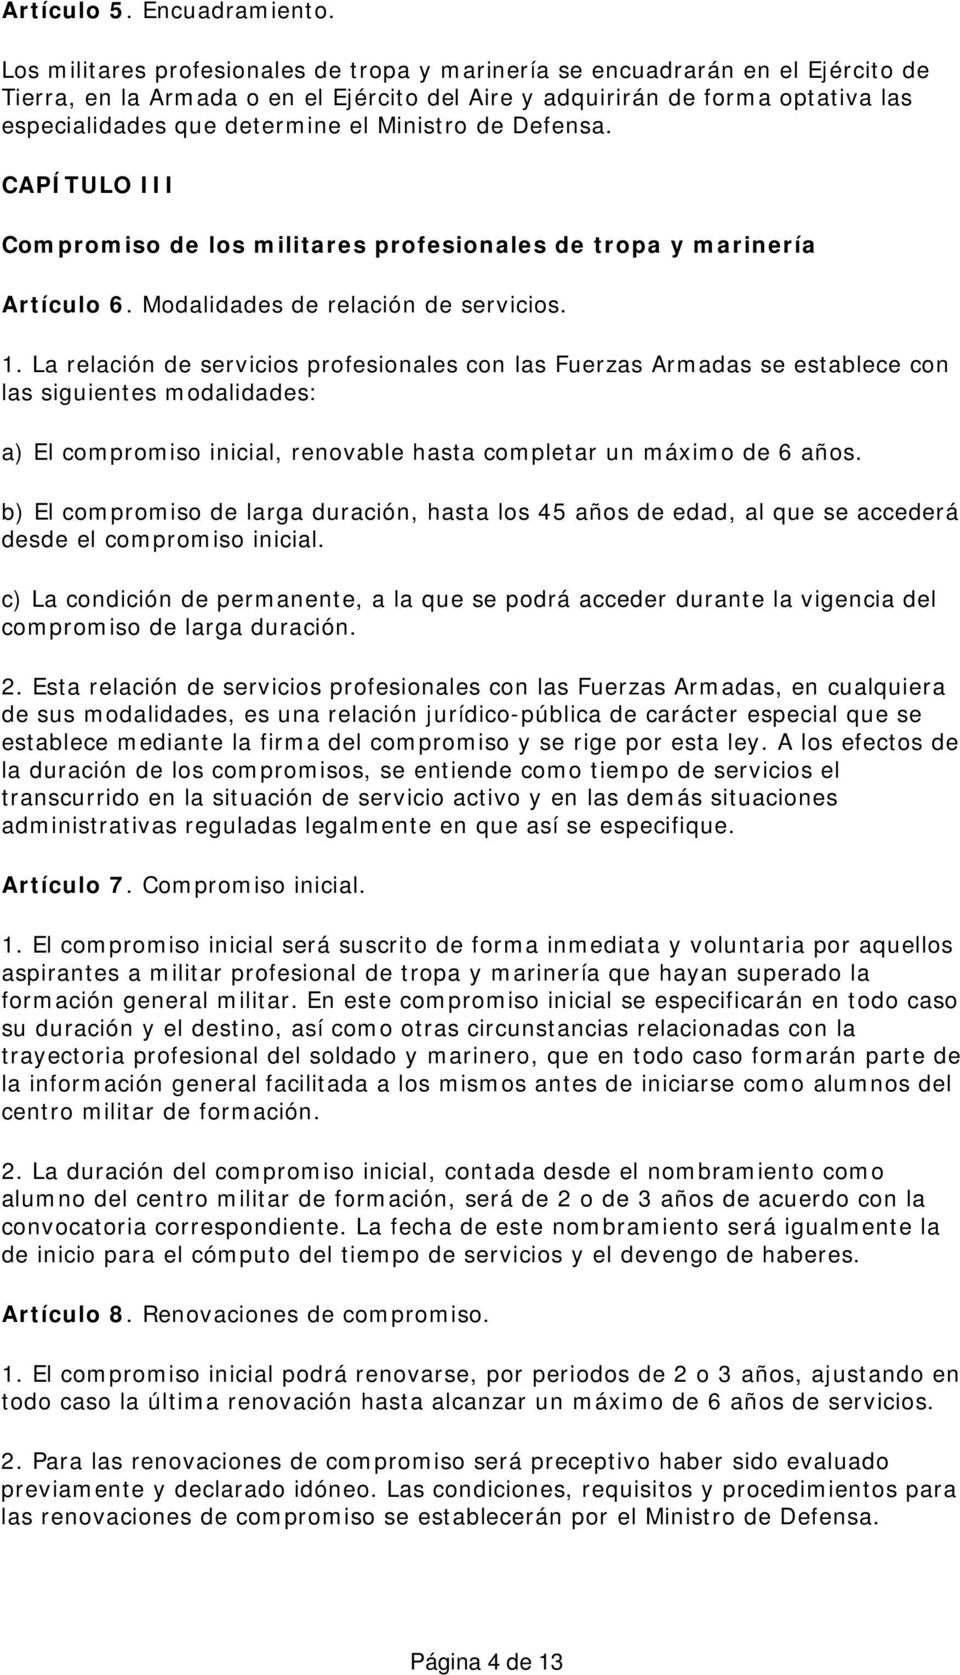 Ministro de Defensa. CAPÍTULO III Compromiso de los militares profesionales de tropa y marinería Artículo 6. Modalidades de relación de servicios. 1.